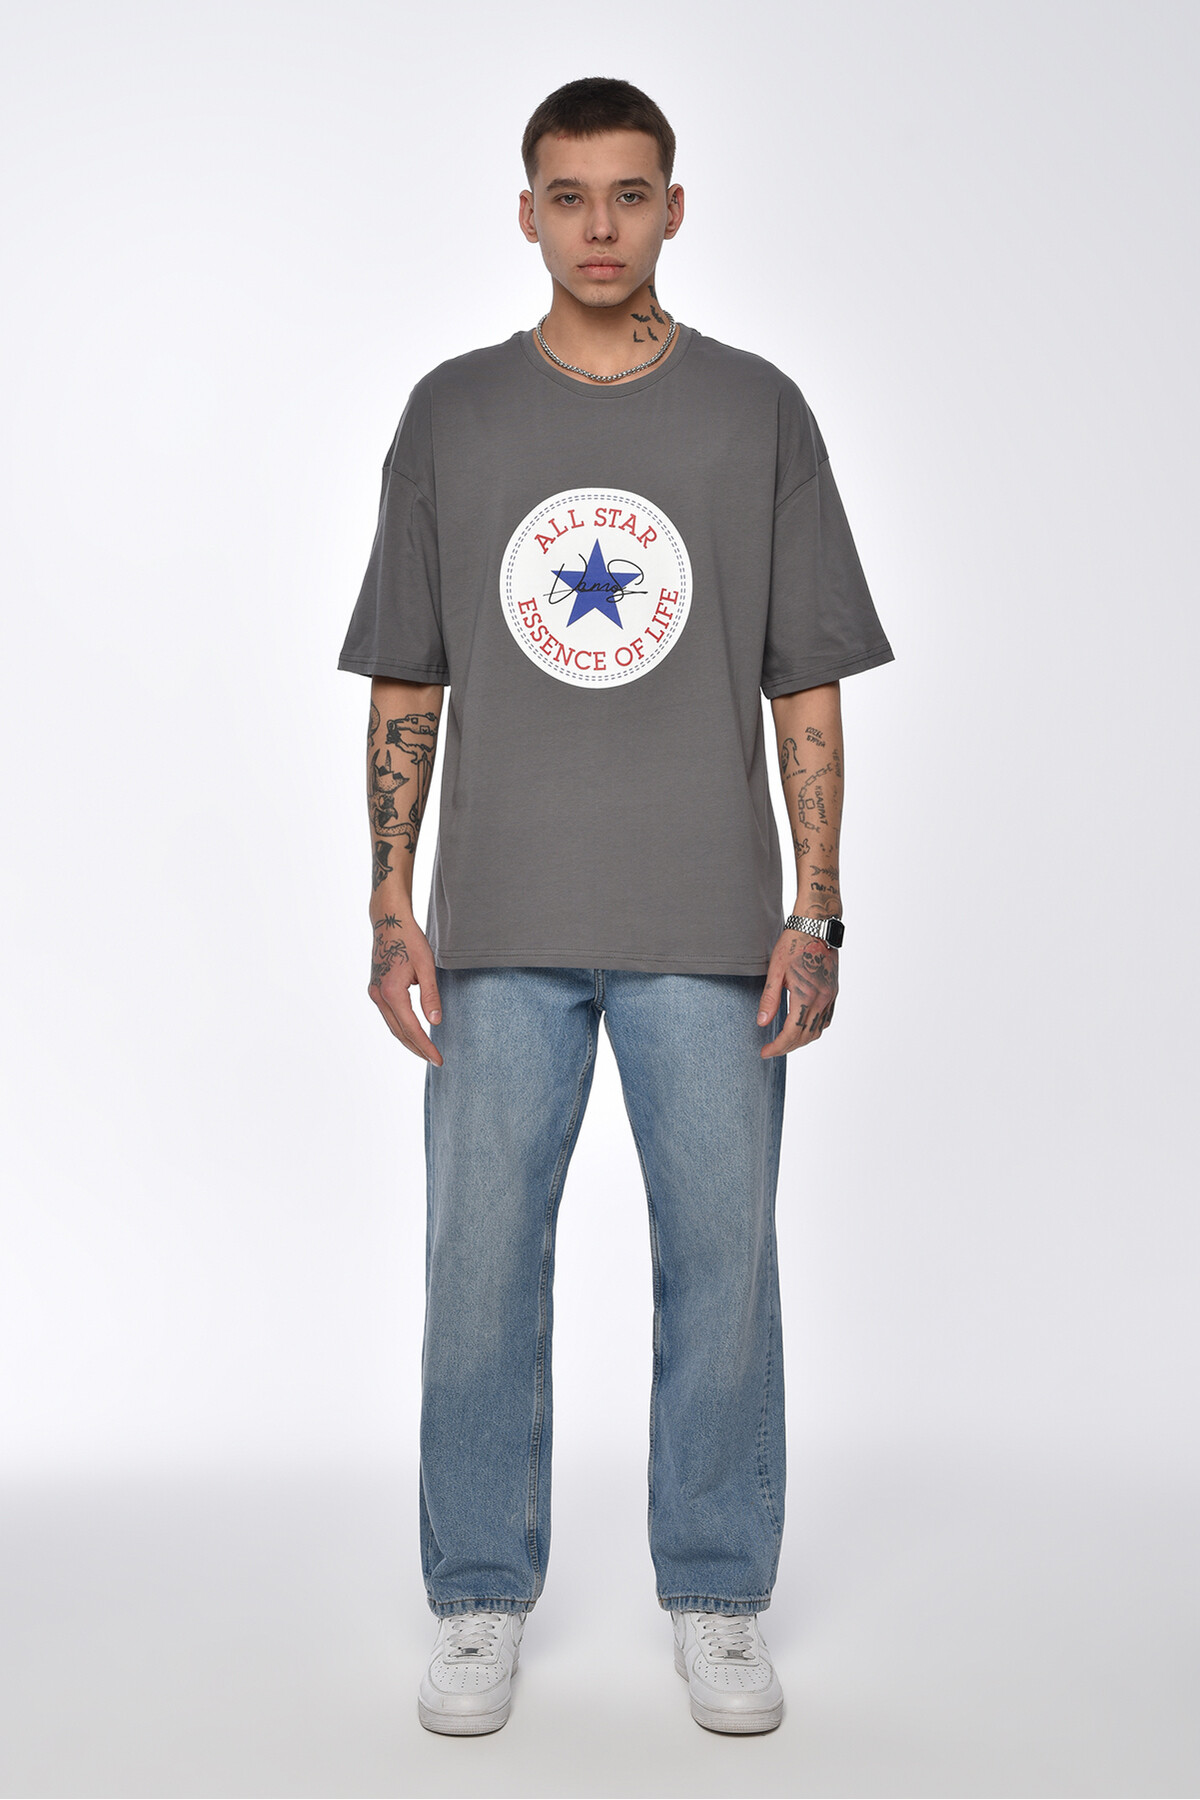 Füme All Star Baskılı Oversize T-shirt